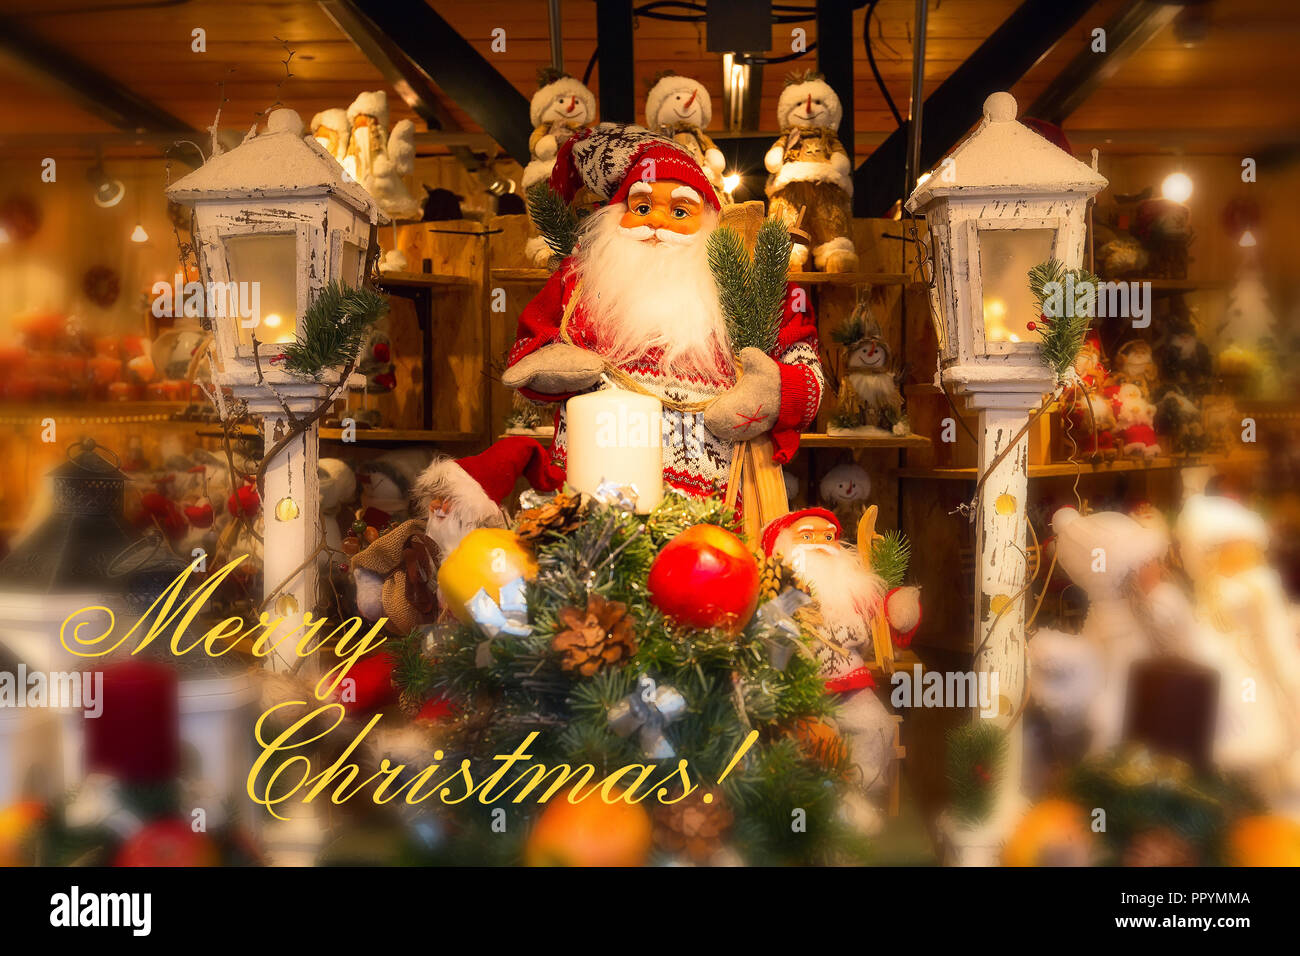 Feliz Navidad tarjeta postal con Santa Claus y figurillas del árbol de navidad, regalos Foto de stock